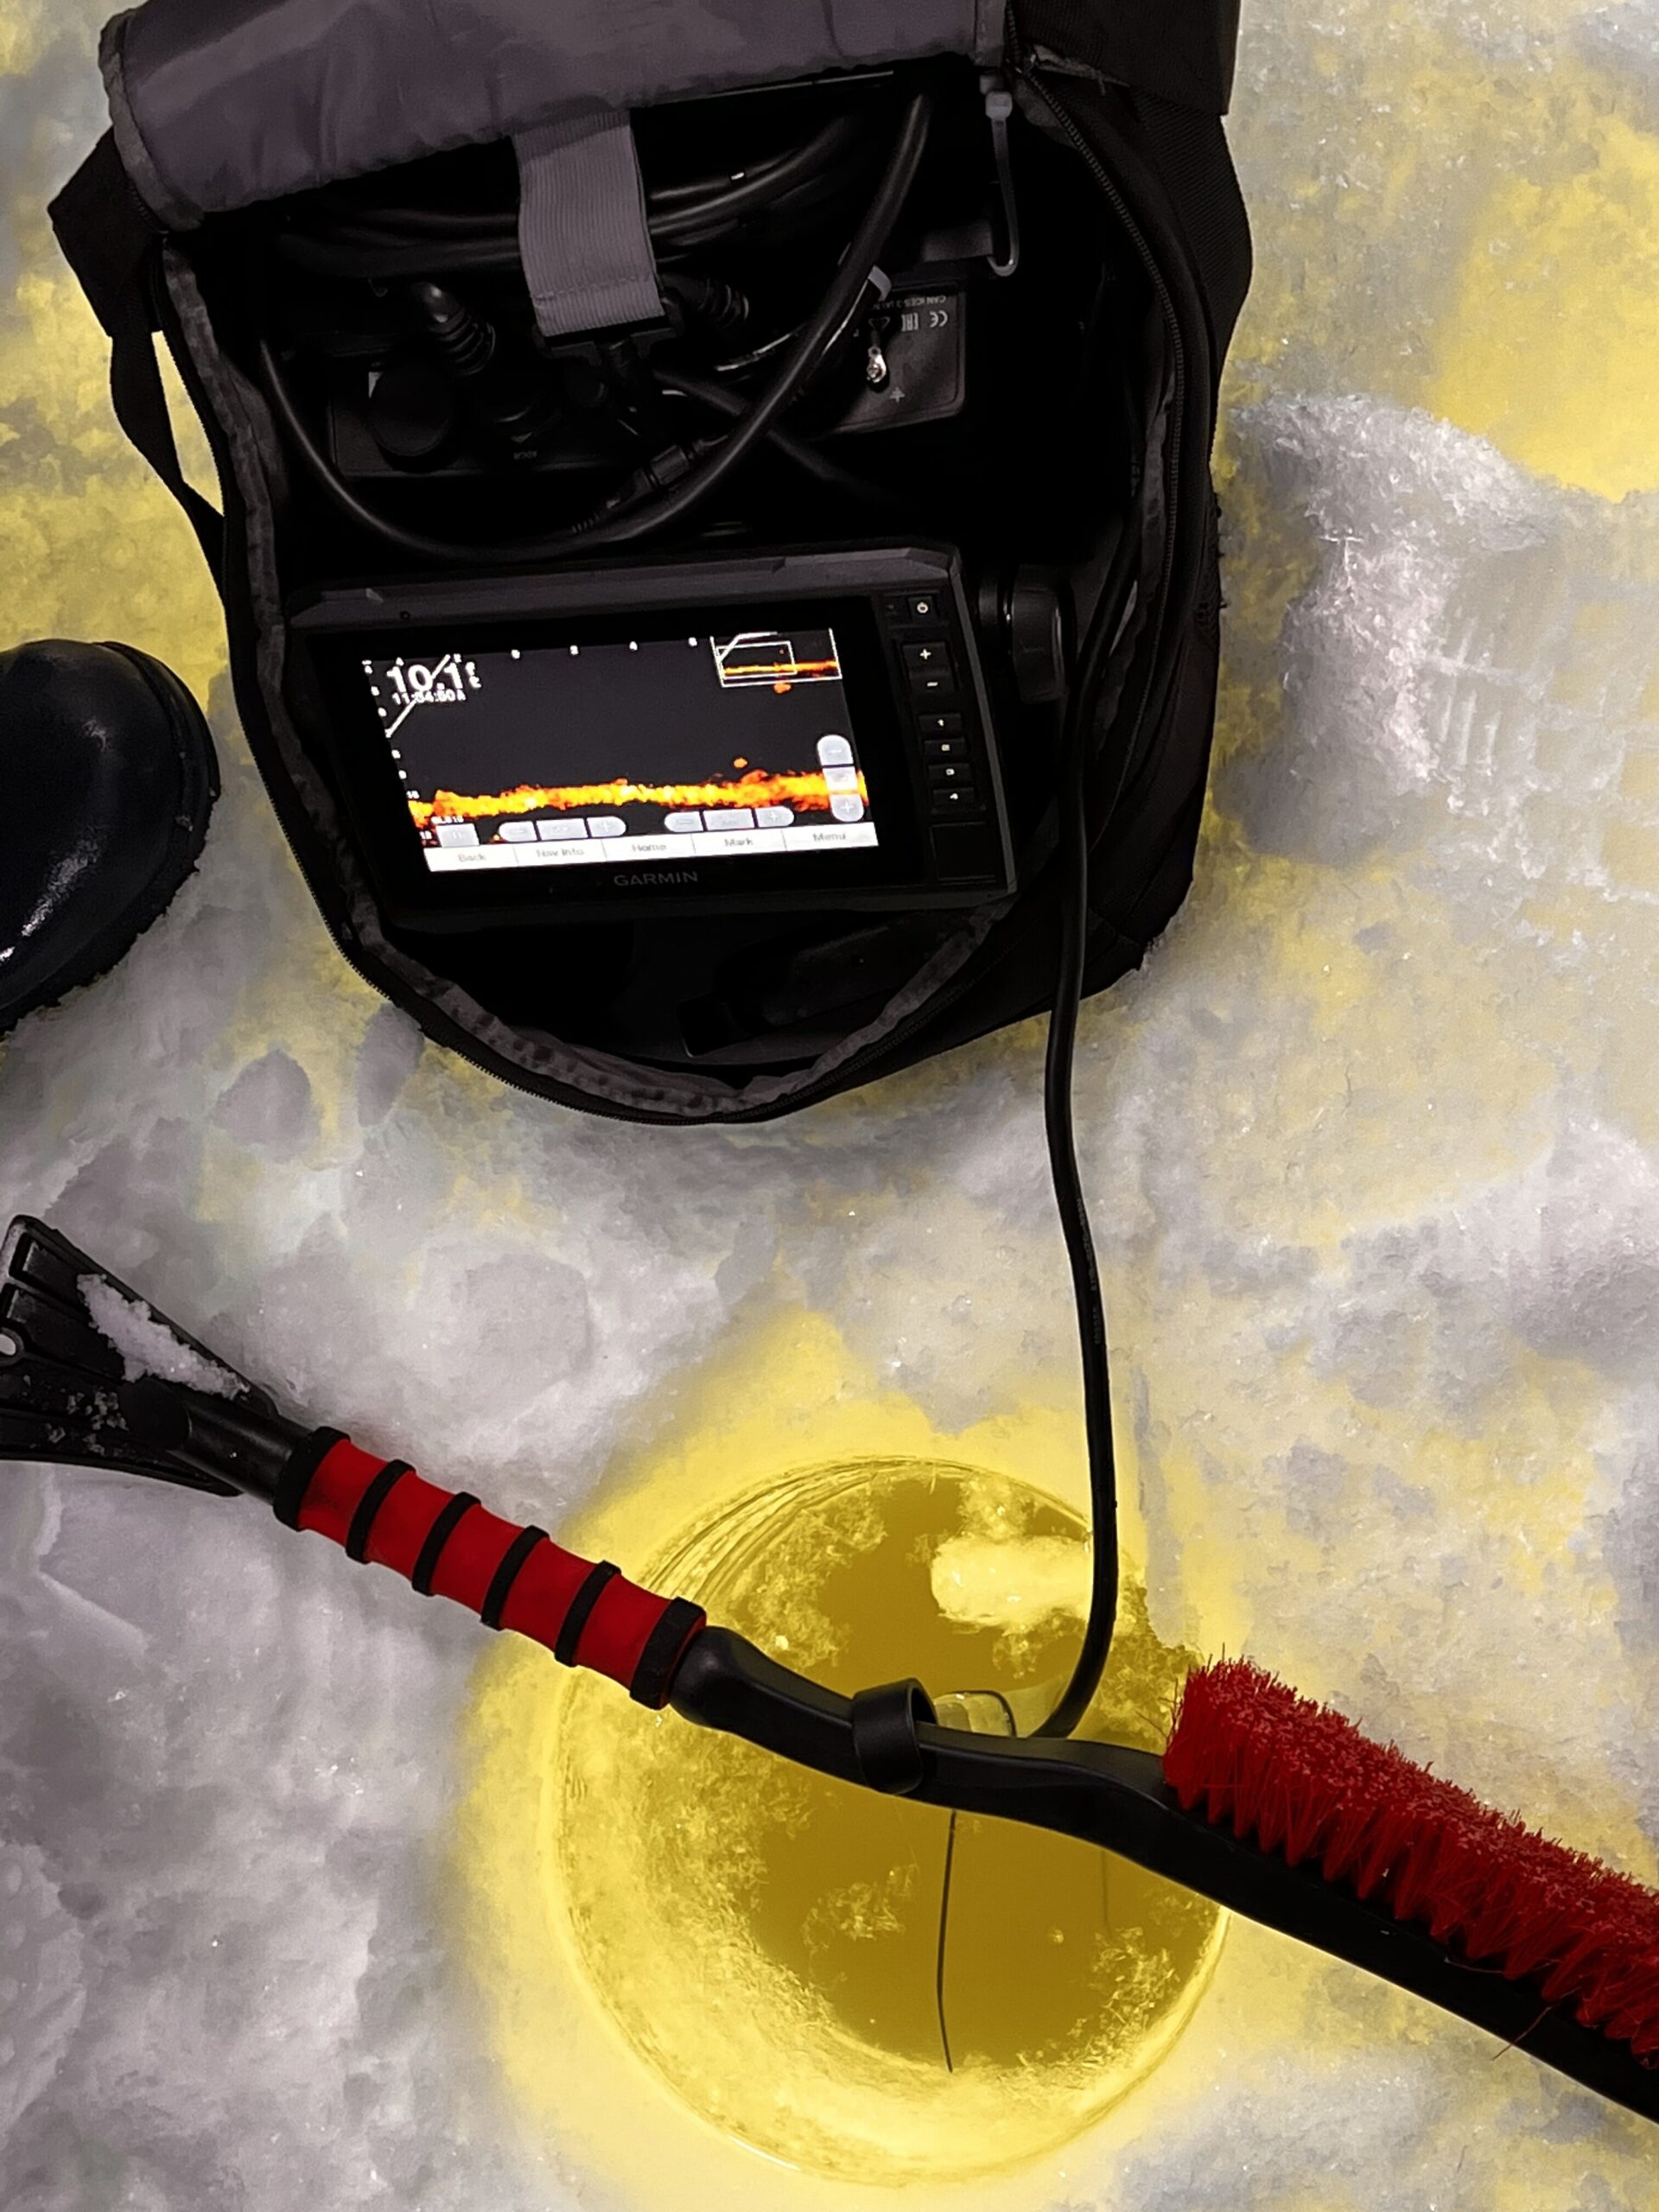 DIY summit style livescope pole. - Ice Fishing Forum - Ice Fishing